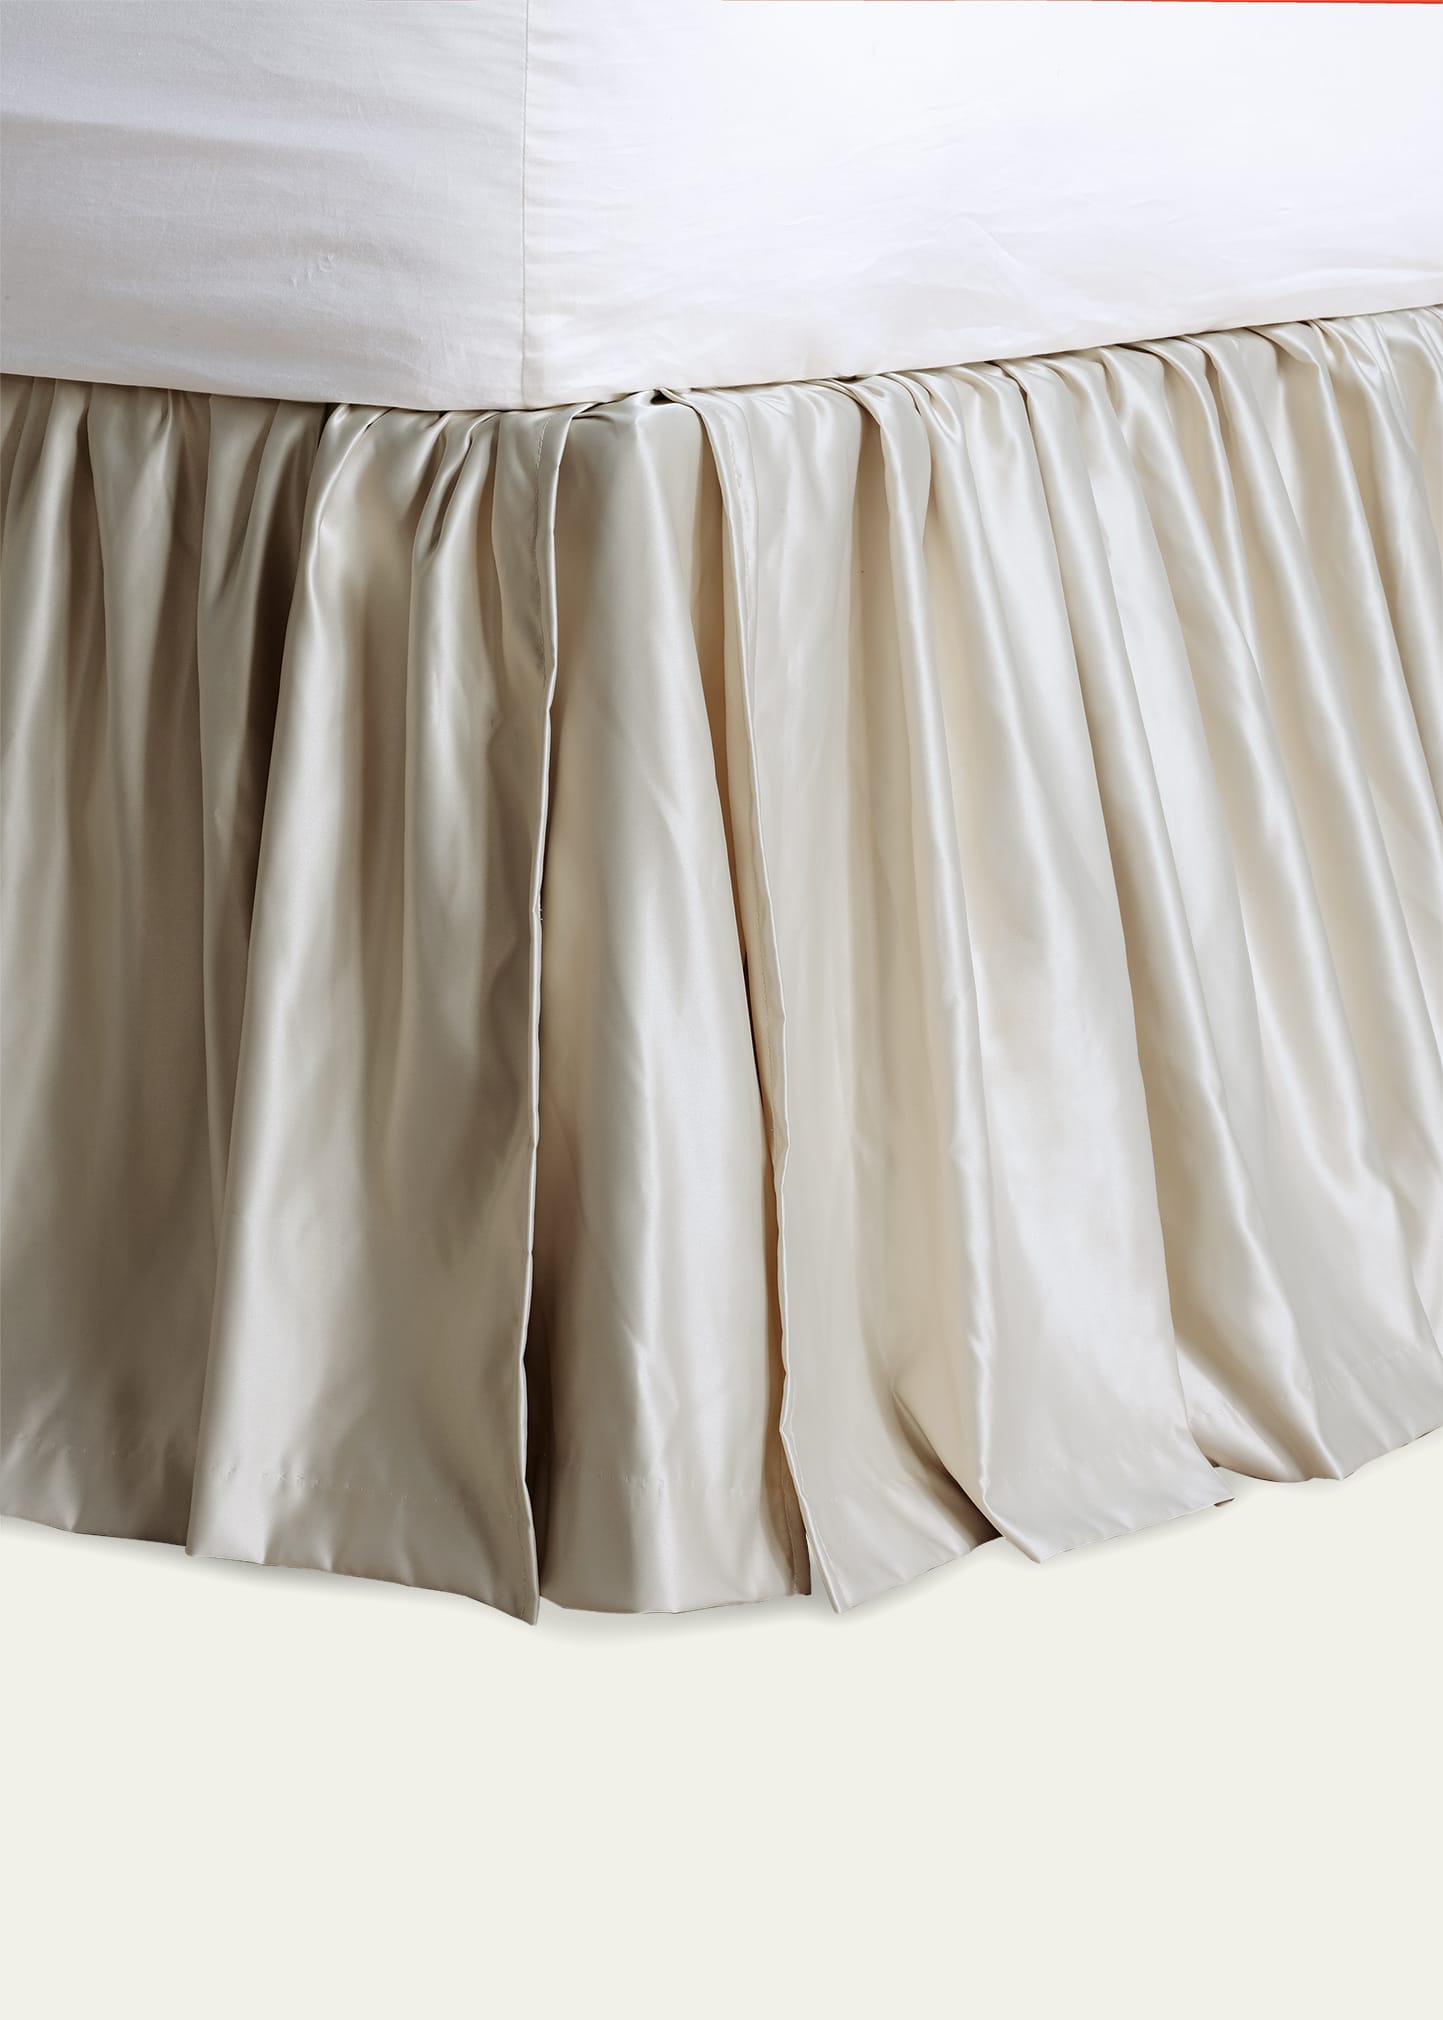 Jolene King Bed Skirt